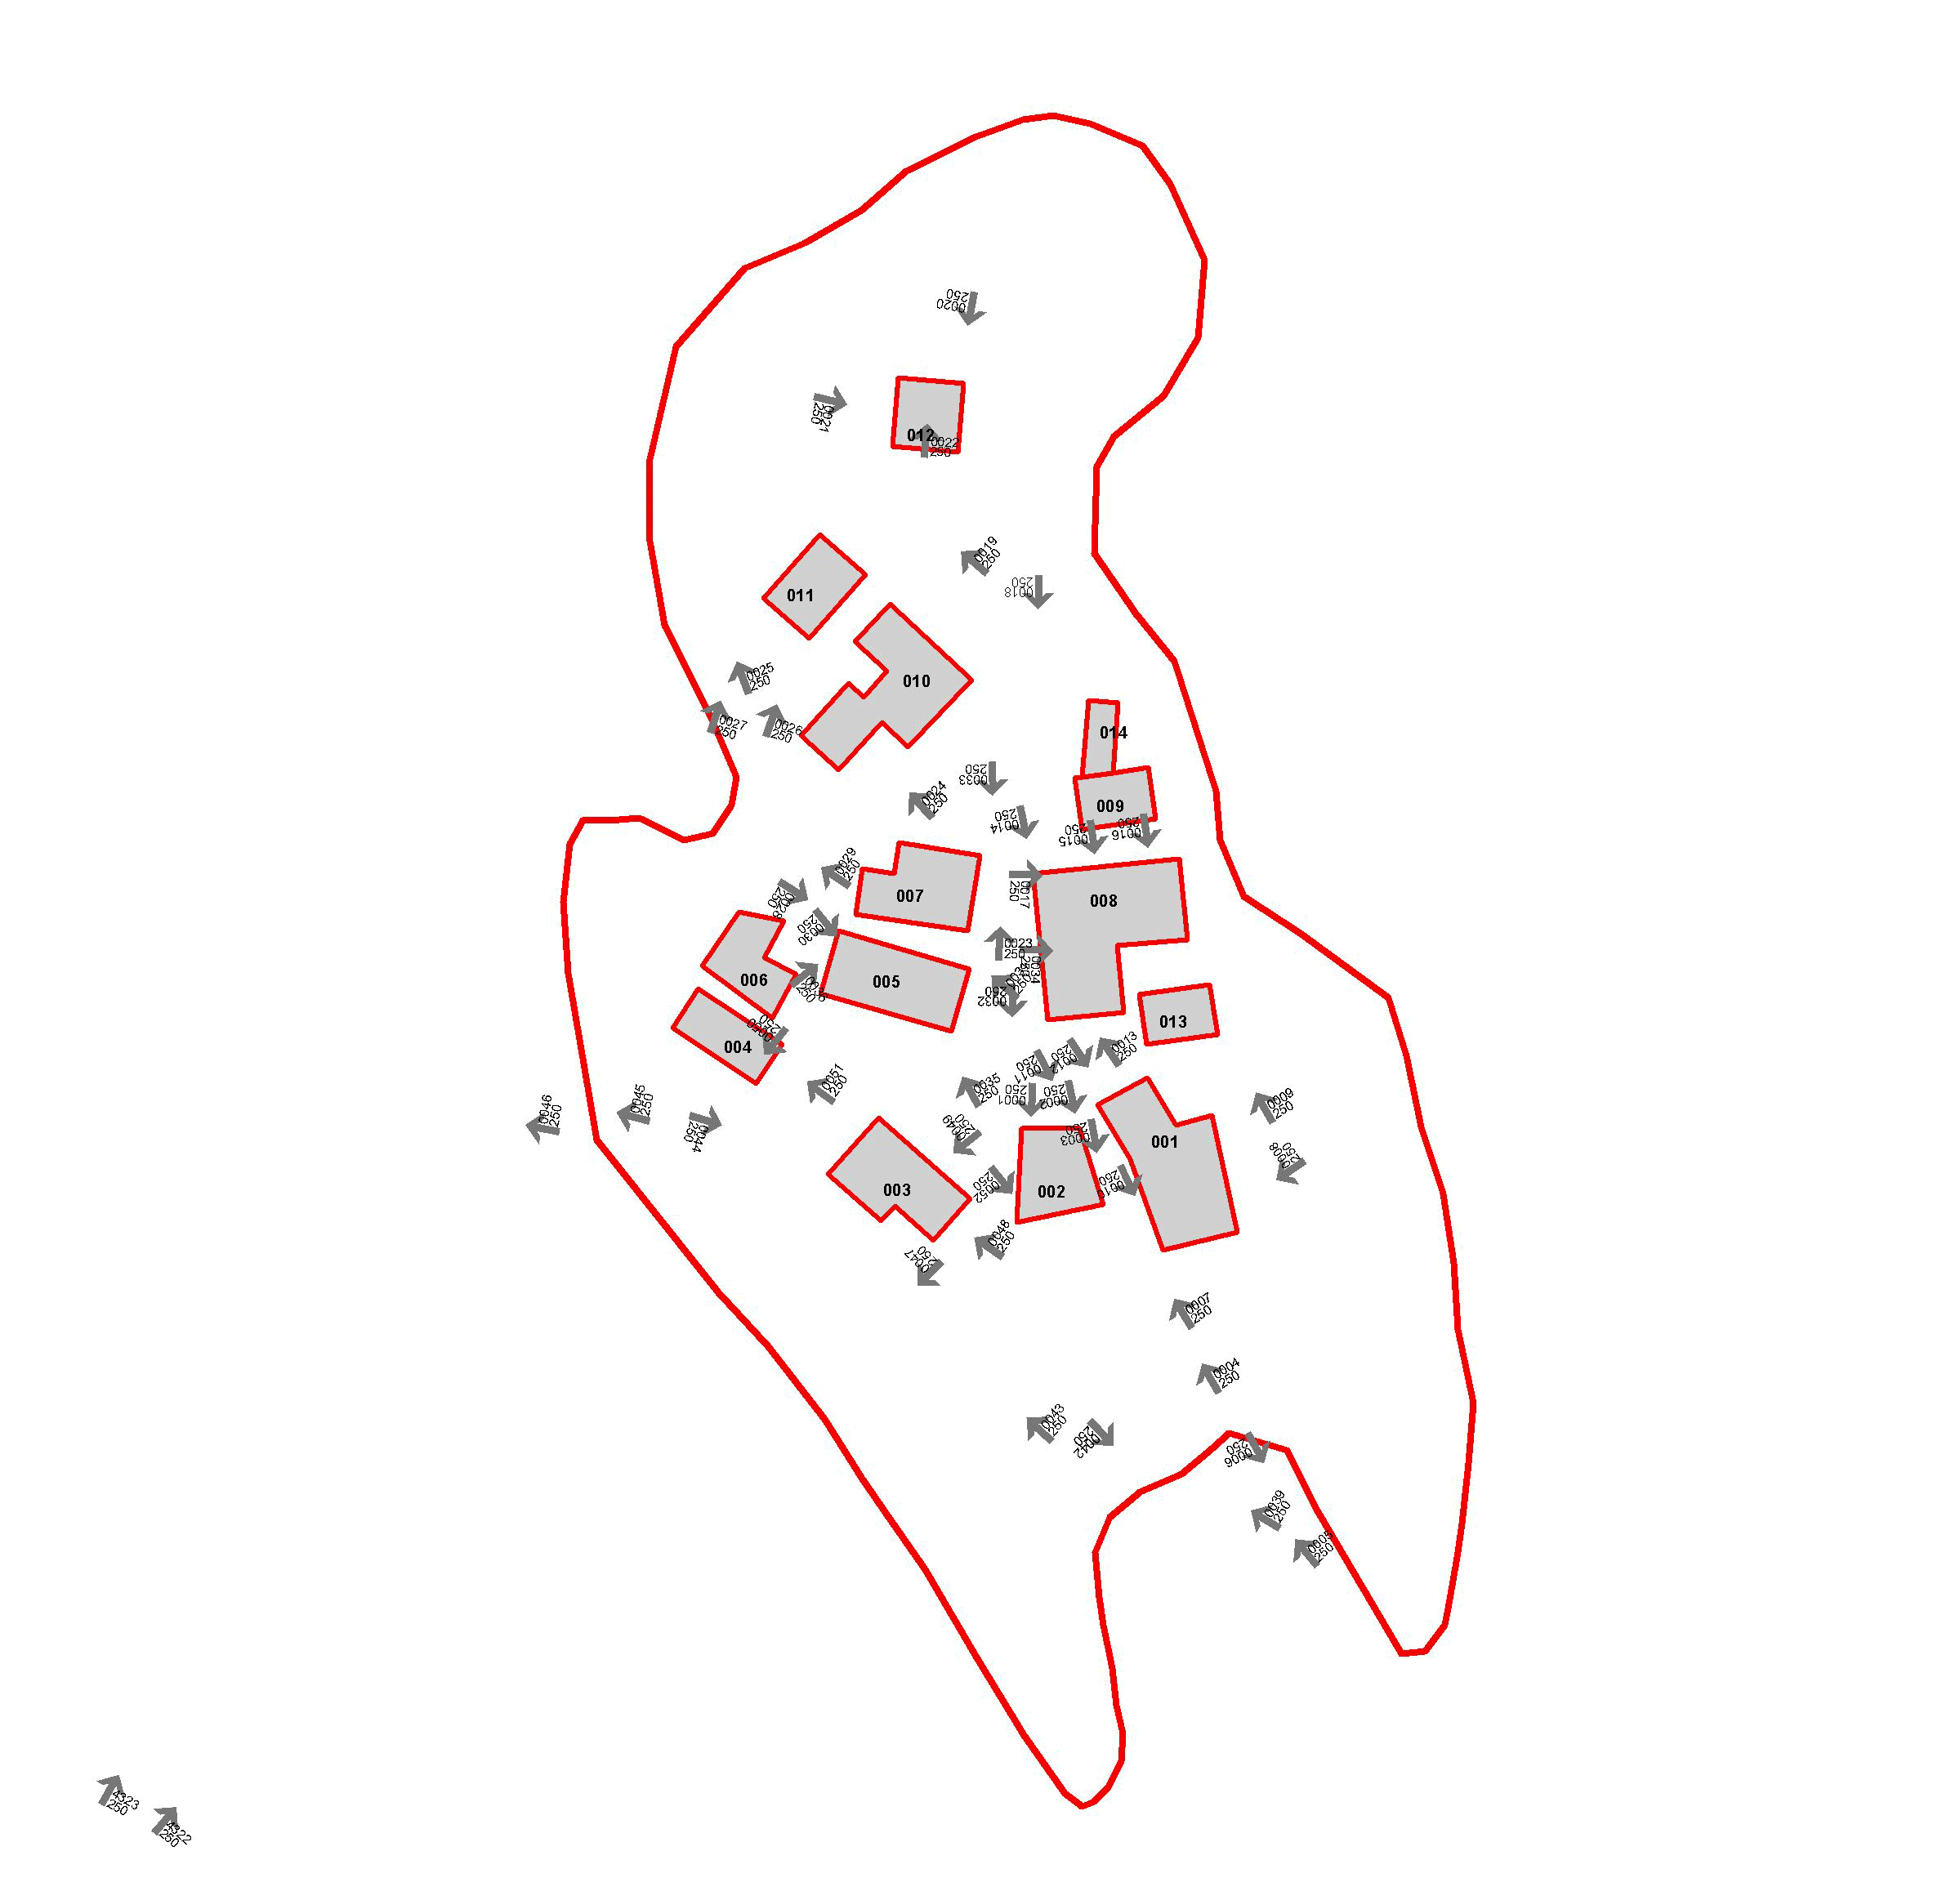 Mappa riassuntiva dei punti dai quali sono state scattate le foto agli edifici